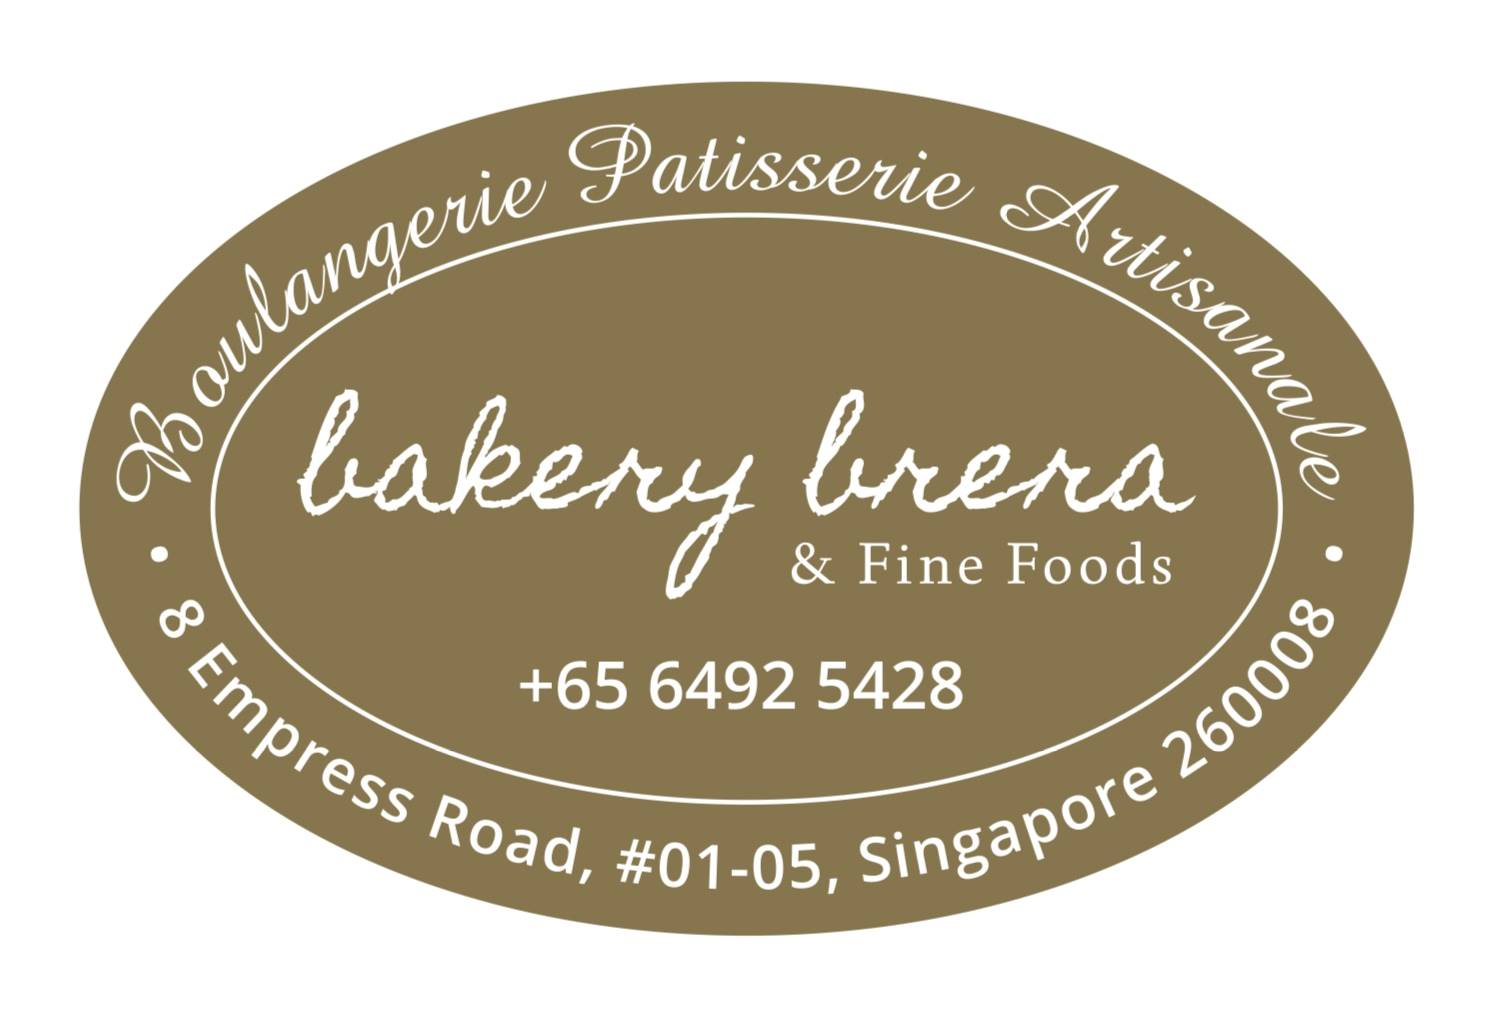 Bakery Brera And Fine Foods Pte. Ltd. company logo